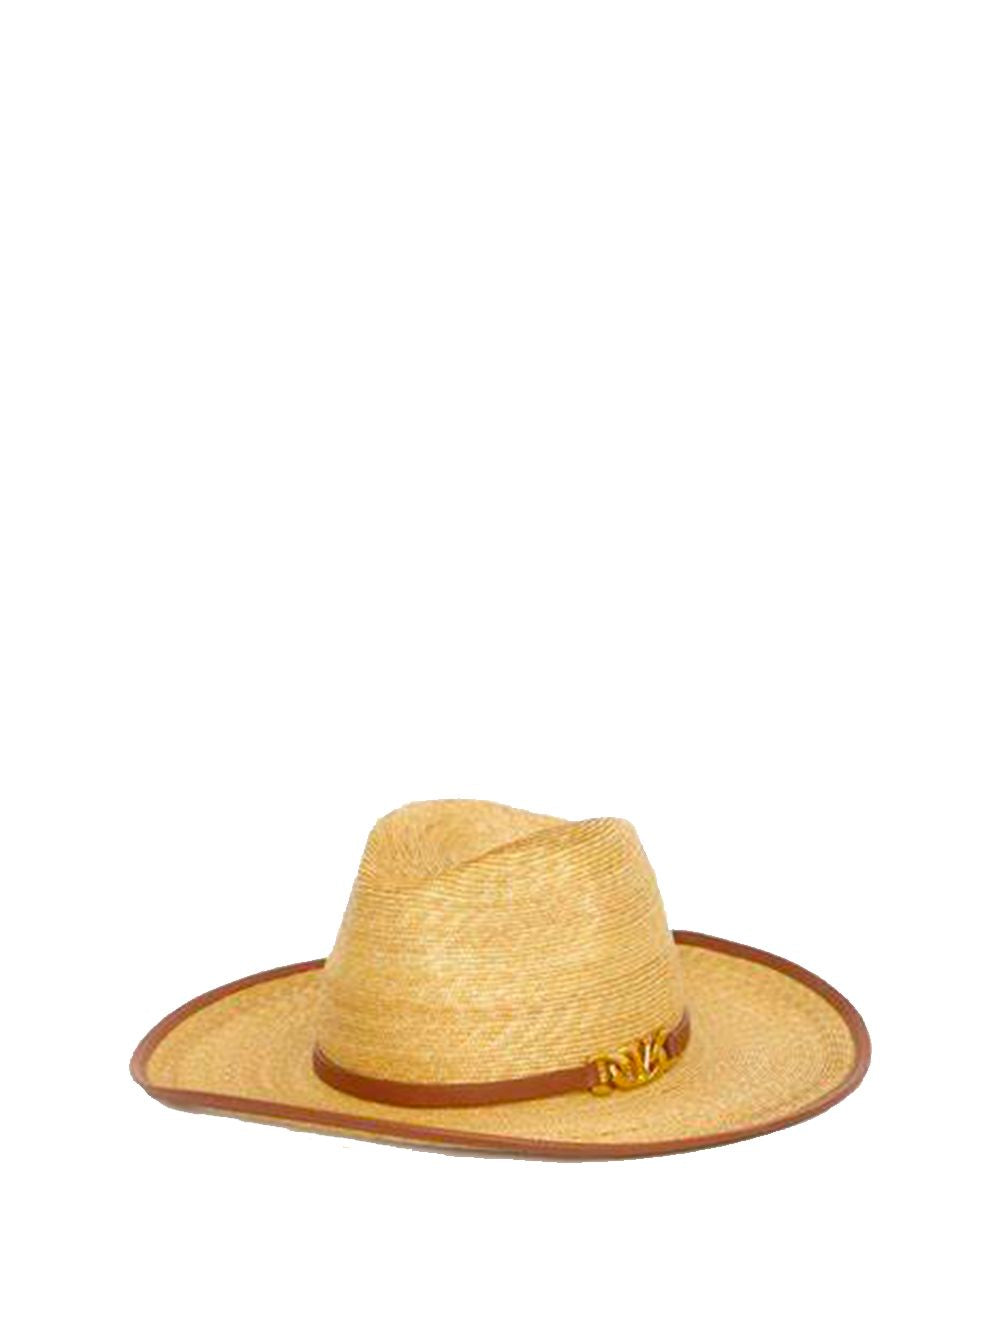 VALENTINO GARAVANI Vlogo Chain Straw Hat for Women - Beige